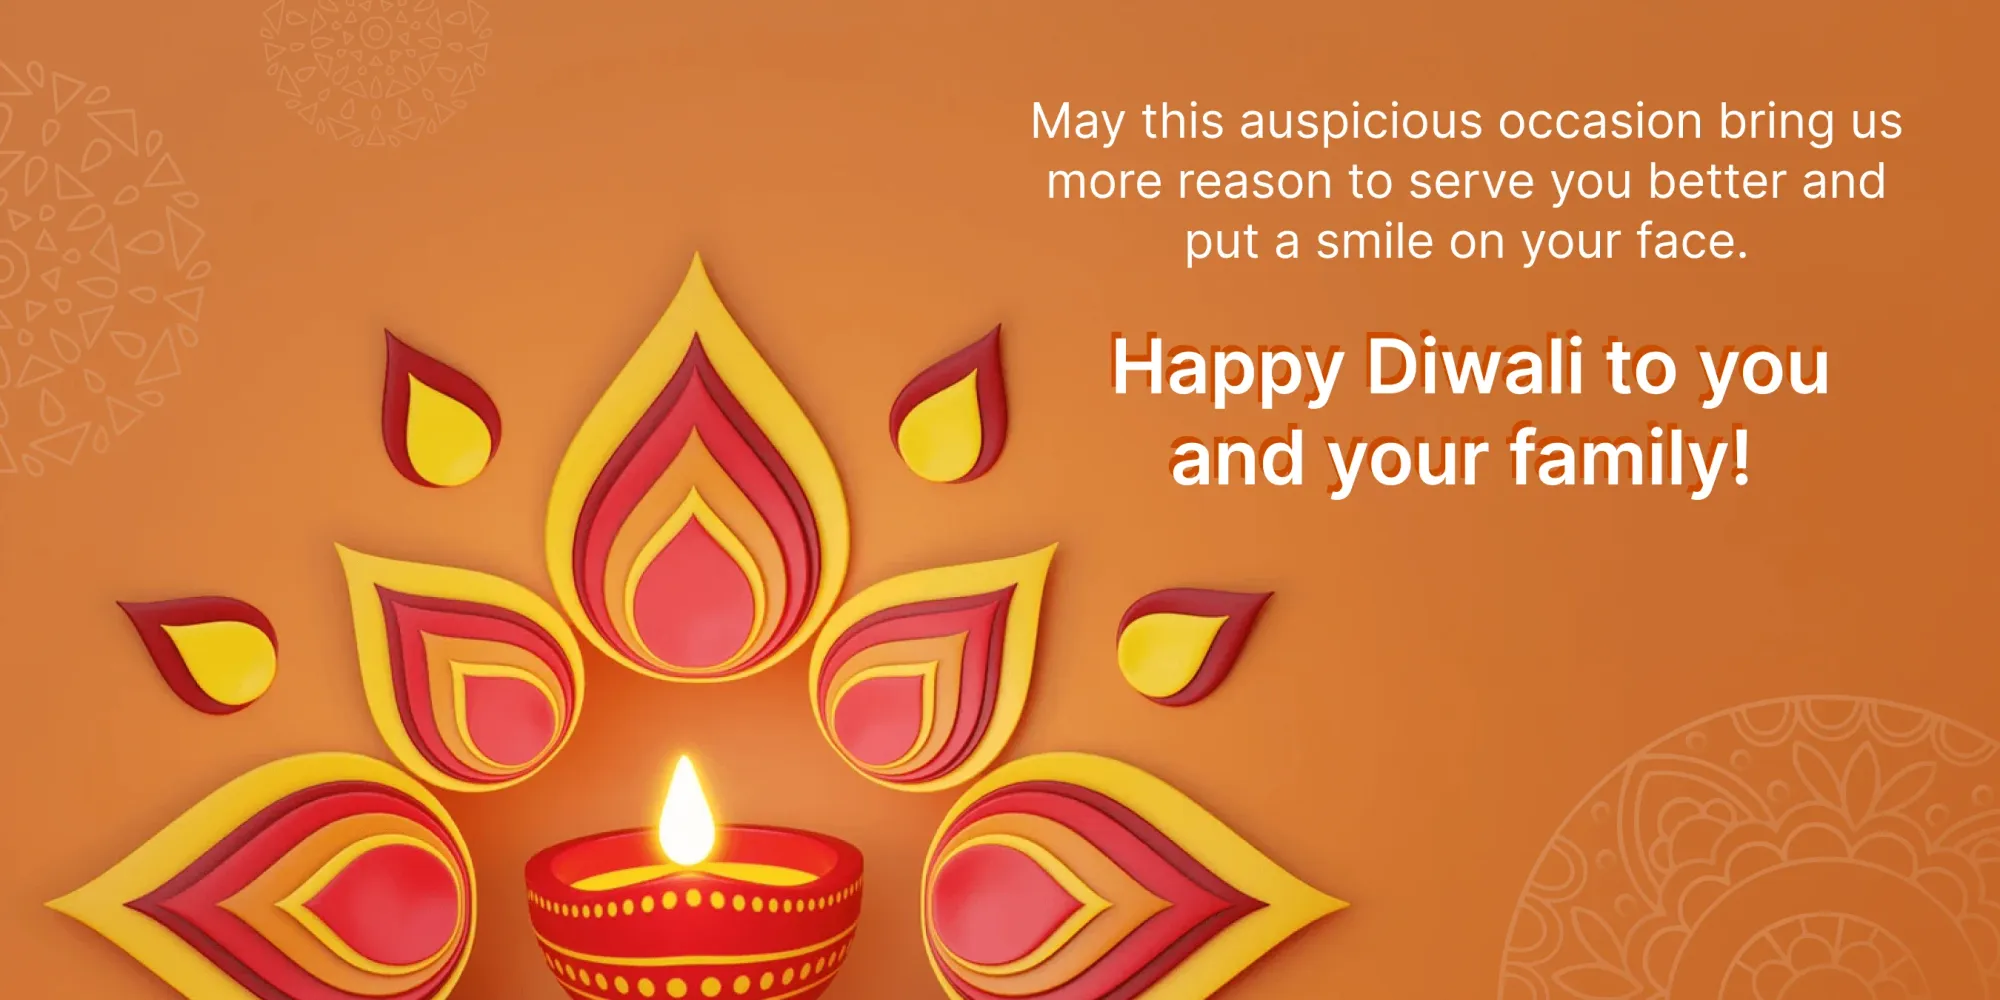 Beste Diwali wensen voor klanten